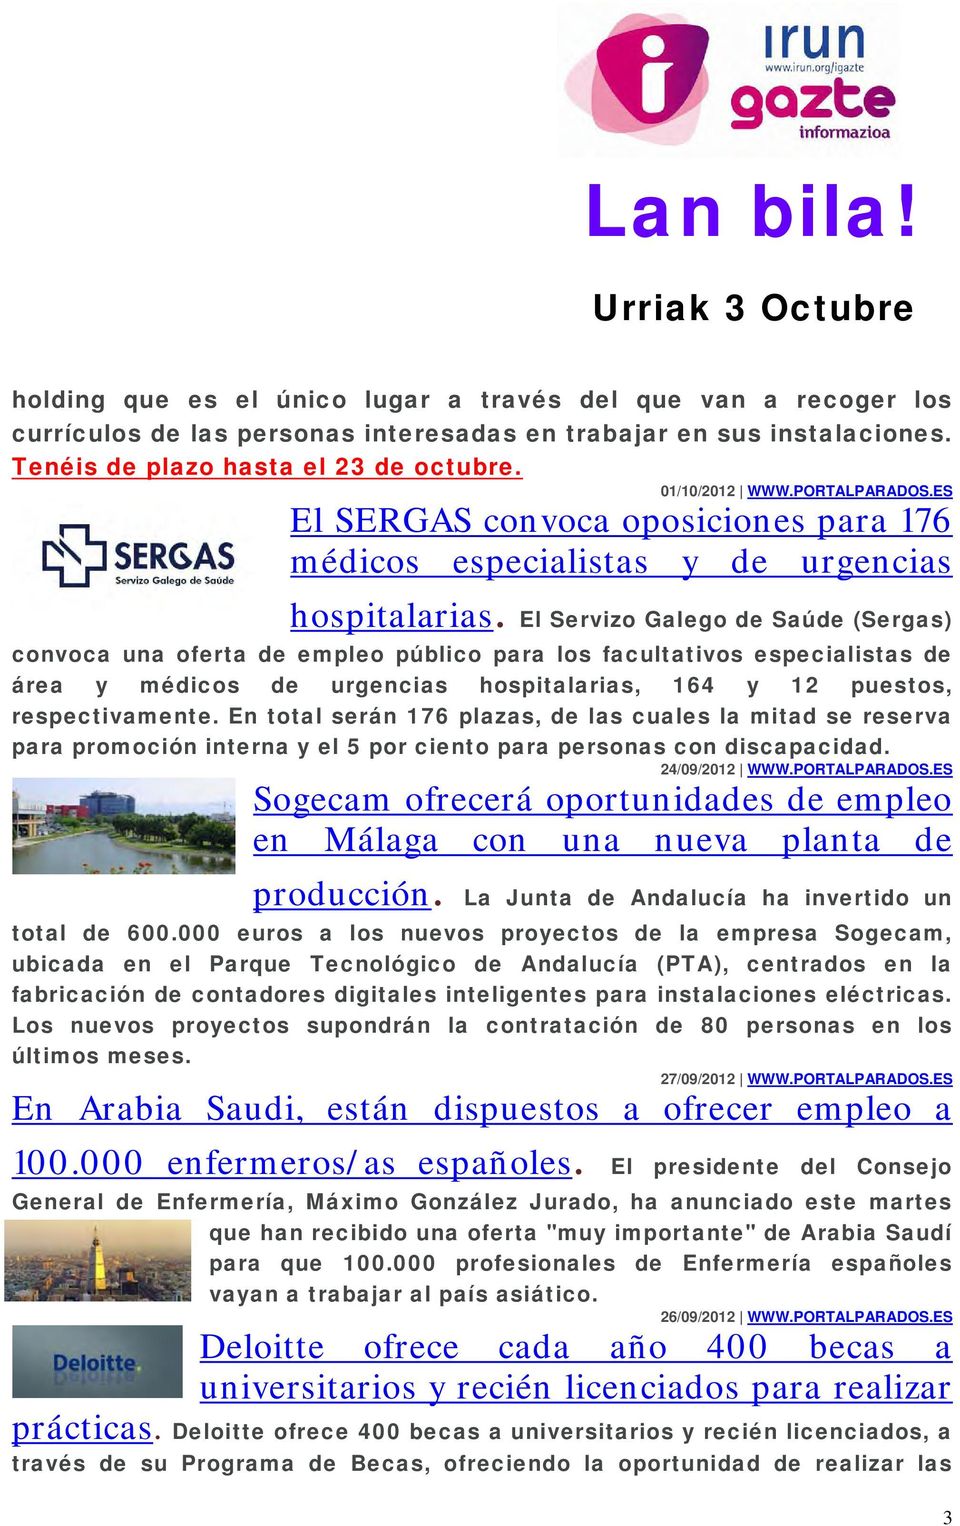 El Servizo Galego de Saúde (Sergas) convoca una oferta de empleo público para los facultativos especialistas de área y médicos de urgencias hospitalarias, 164 y 12 puestos, respectivamente.